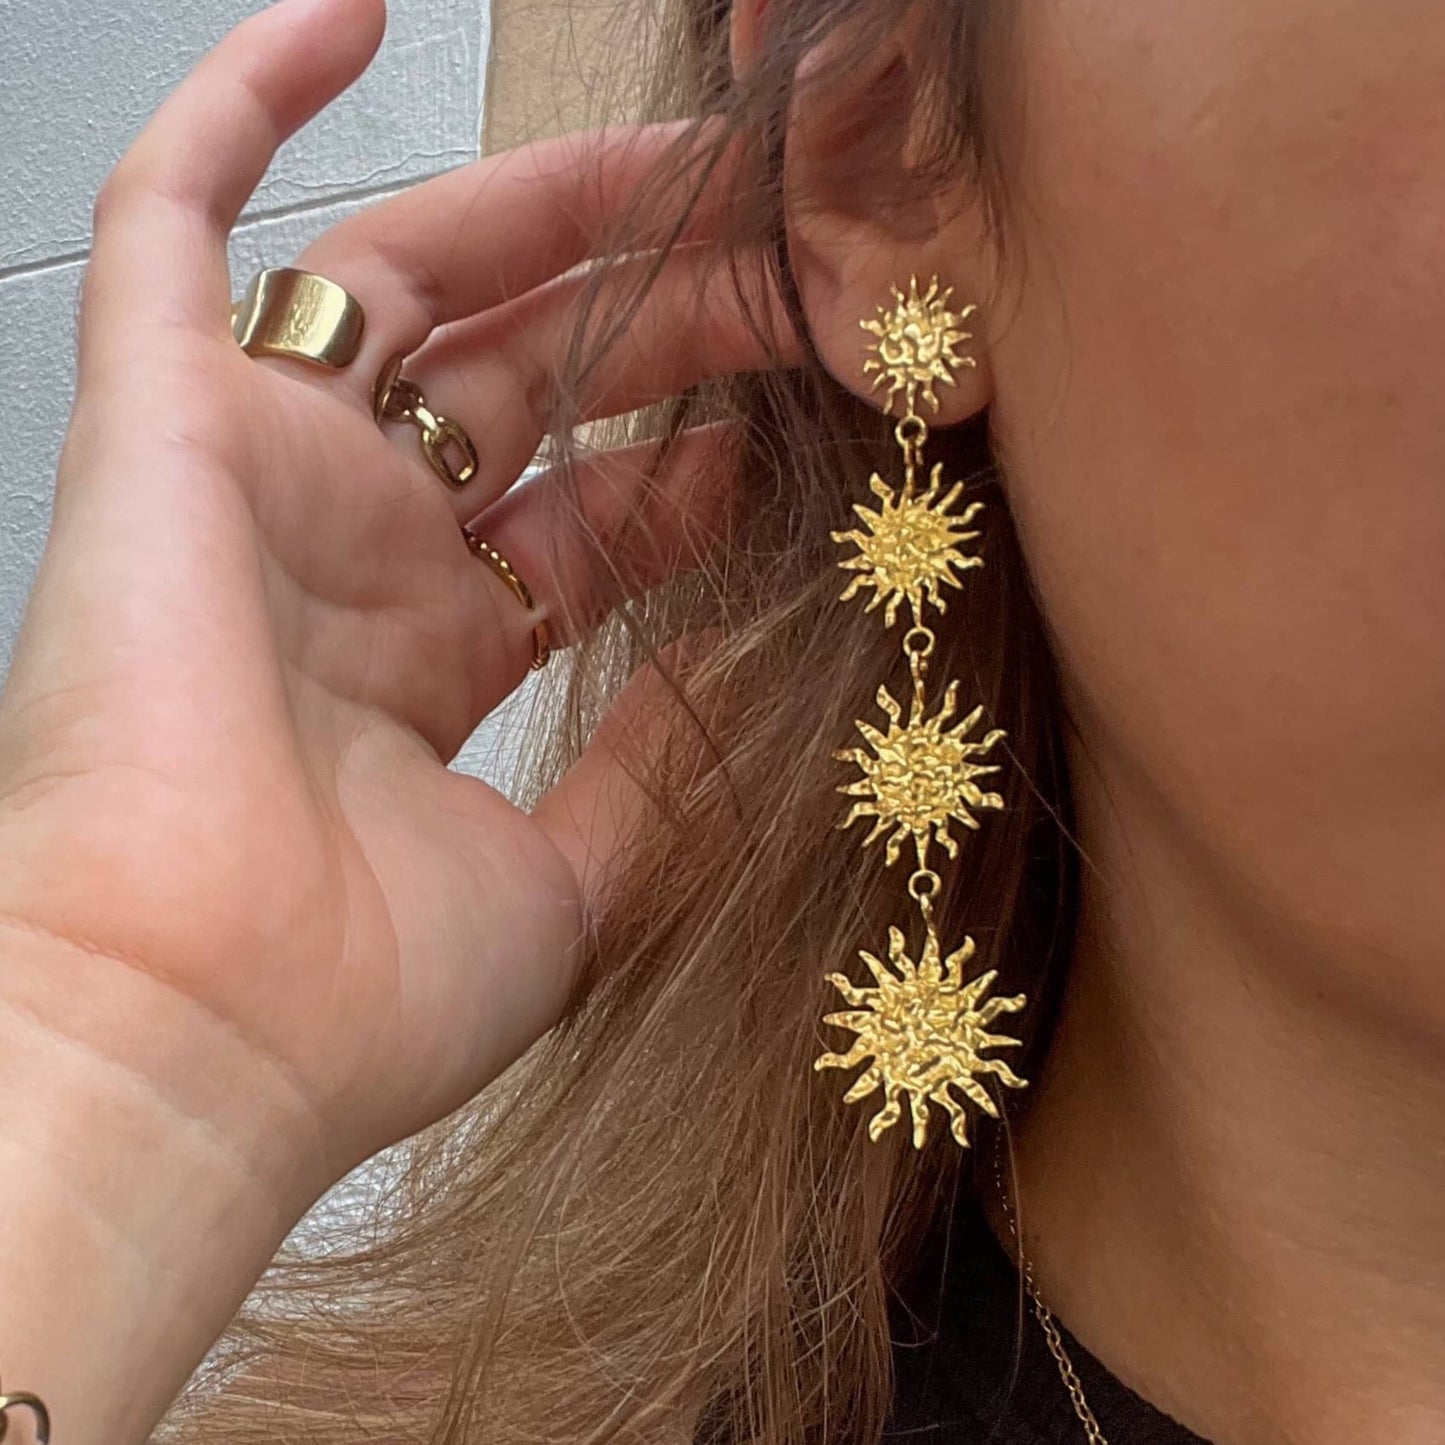 Ra earrings